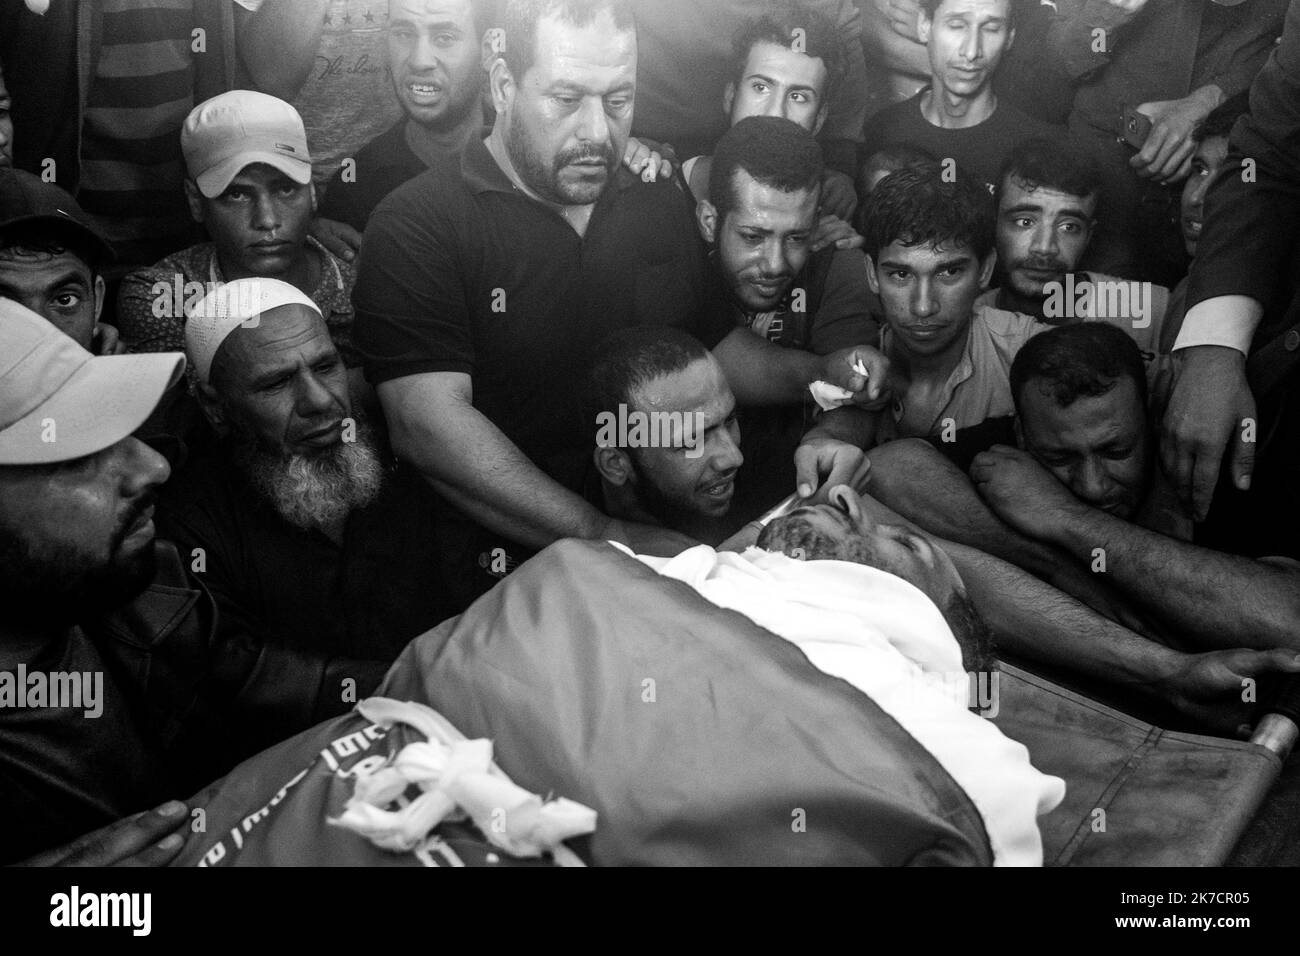 ©Michael Bunel / Le Pictorium/MAXPPP - Michael Bunel / Le Pictorium - 13/05/2018 - Palestine / Gaza / Khan youne - Des membres de la famille et amis rassembles a la mosquee pour leurs dernier au revoir au defunt. Jaber Salem Mustafa, un homme de 40 ans. Il est decede d'un tir de sniper dans la poitrine pendant la manifestation du vendredi 12 mai lors d'affrontements avec l'armee israelienne. Les tensions sont elevees le long de la frontiere entre Gaza et Israel apres plus d'un mois de manifestations de masse hebdomadaires pres de la barriere qui a fait 50 morts parmi les manifestants palestini Stock Photo